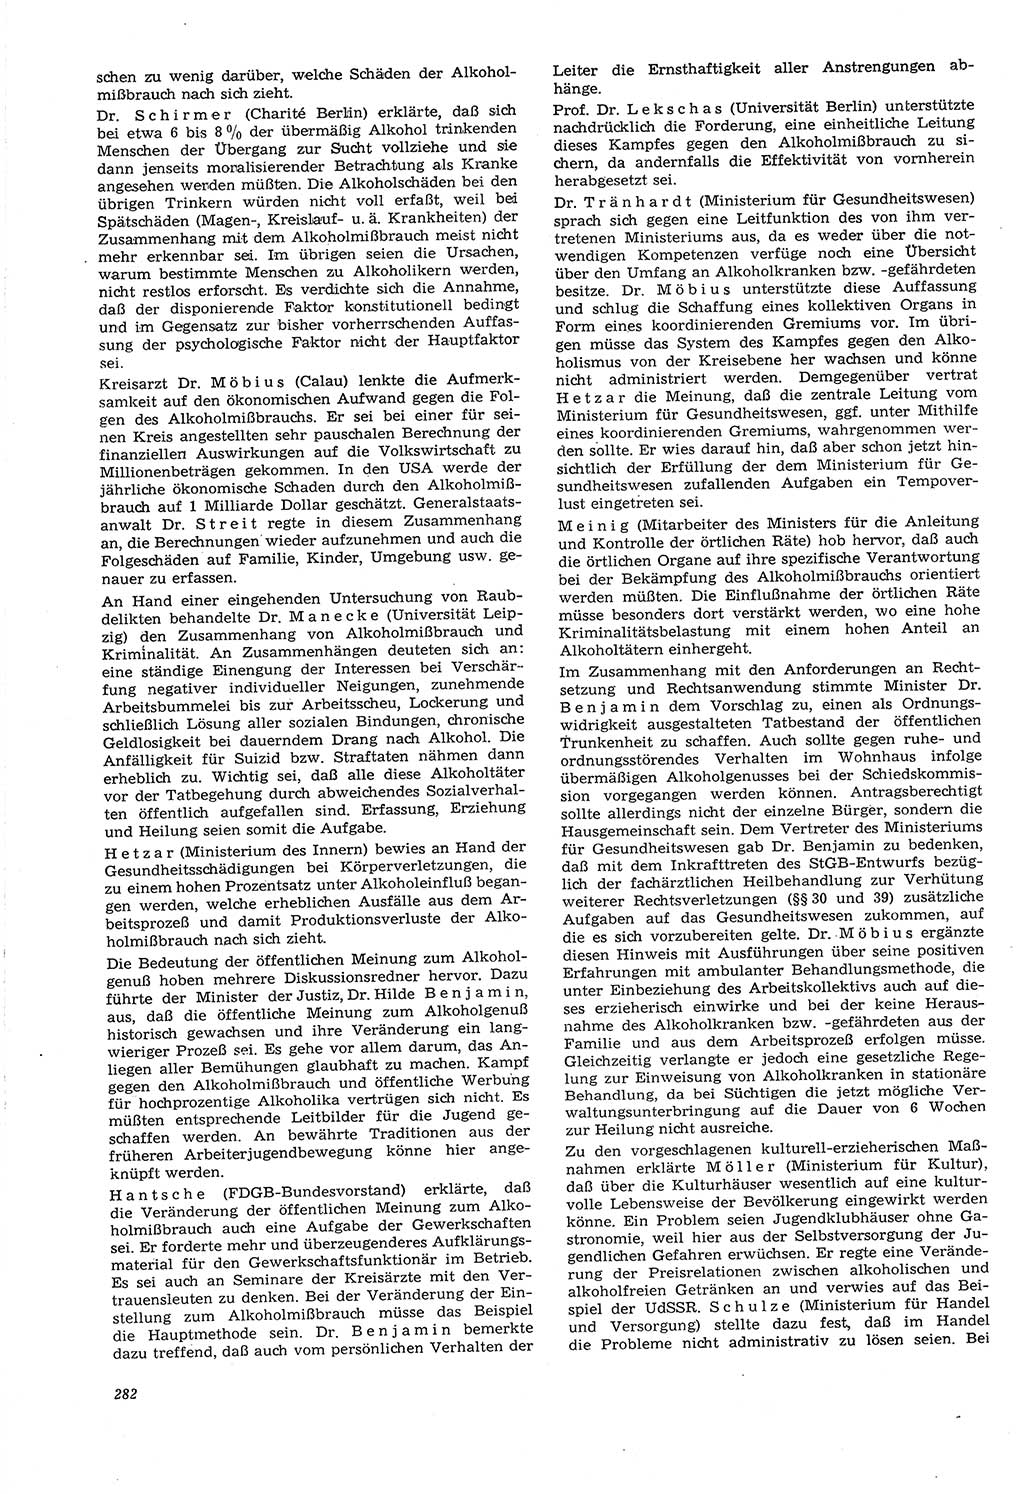 Neue Justiz (NJ), Zeitschrift für Recht und Rechtswissenschaft [Deutsche Demokratische Republik (DDR)], 21. Jahrgang 1967, Seite 282 (NJ DDR 1967, S. 282)